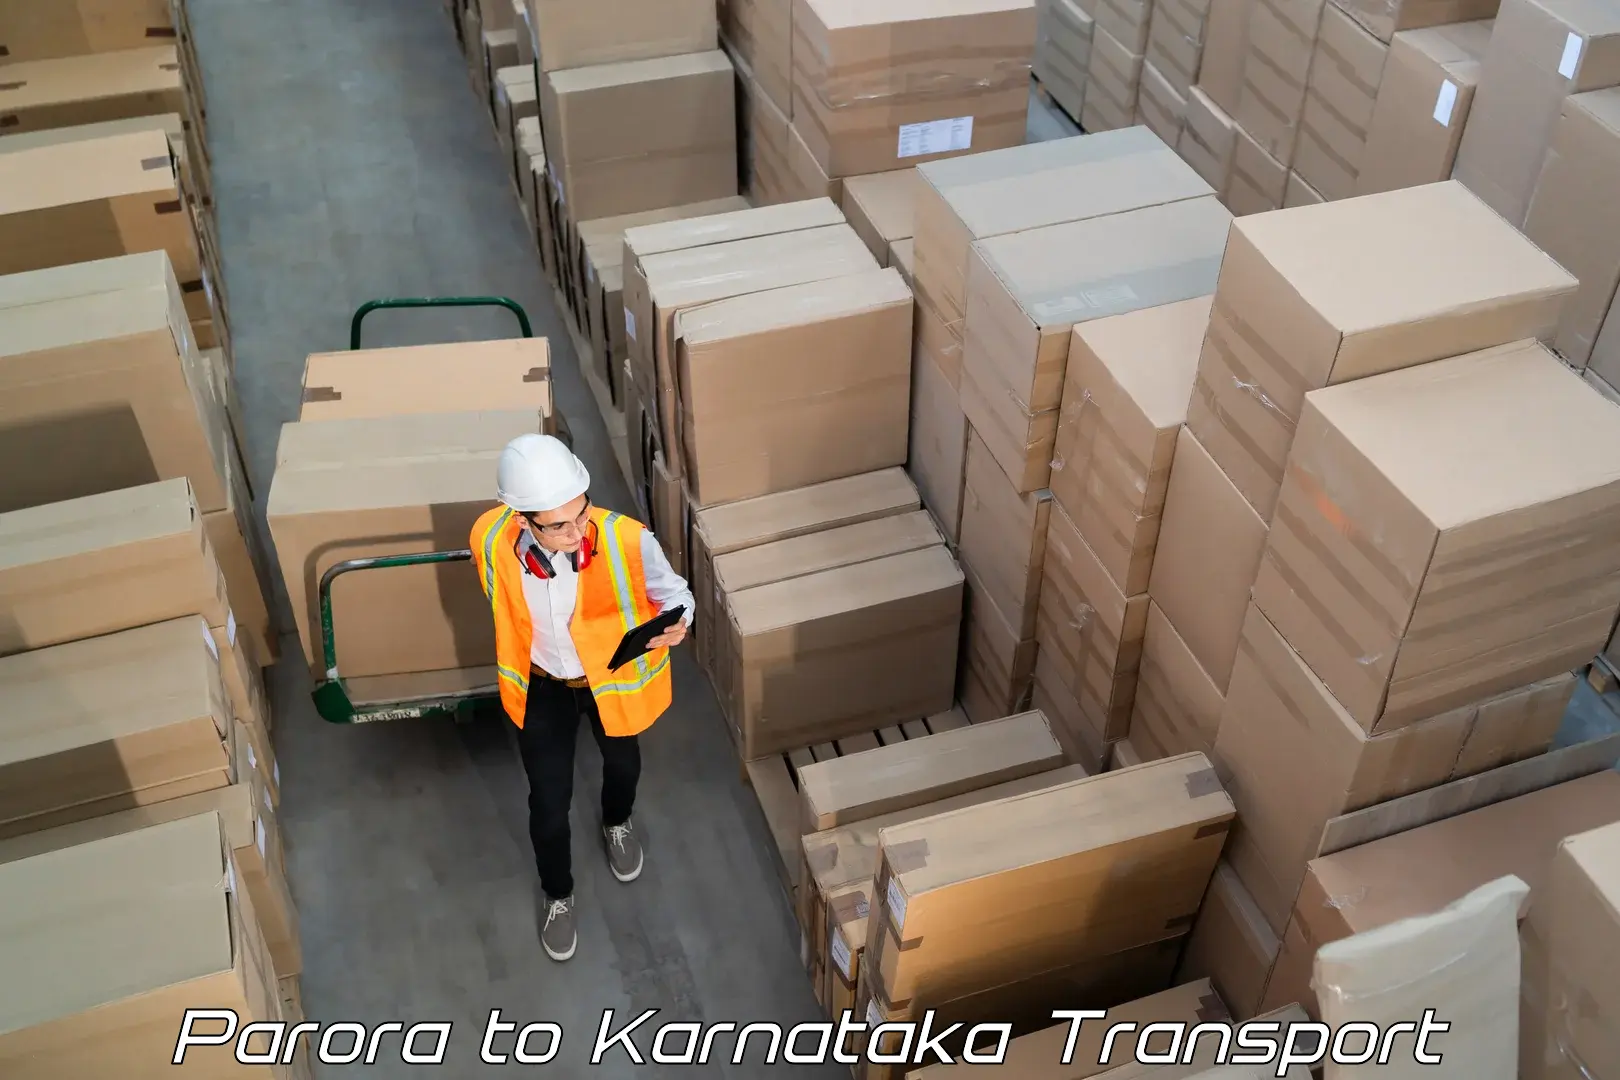 Container transport service Parora to Honnavar